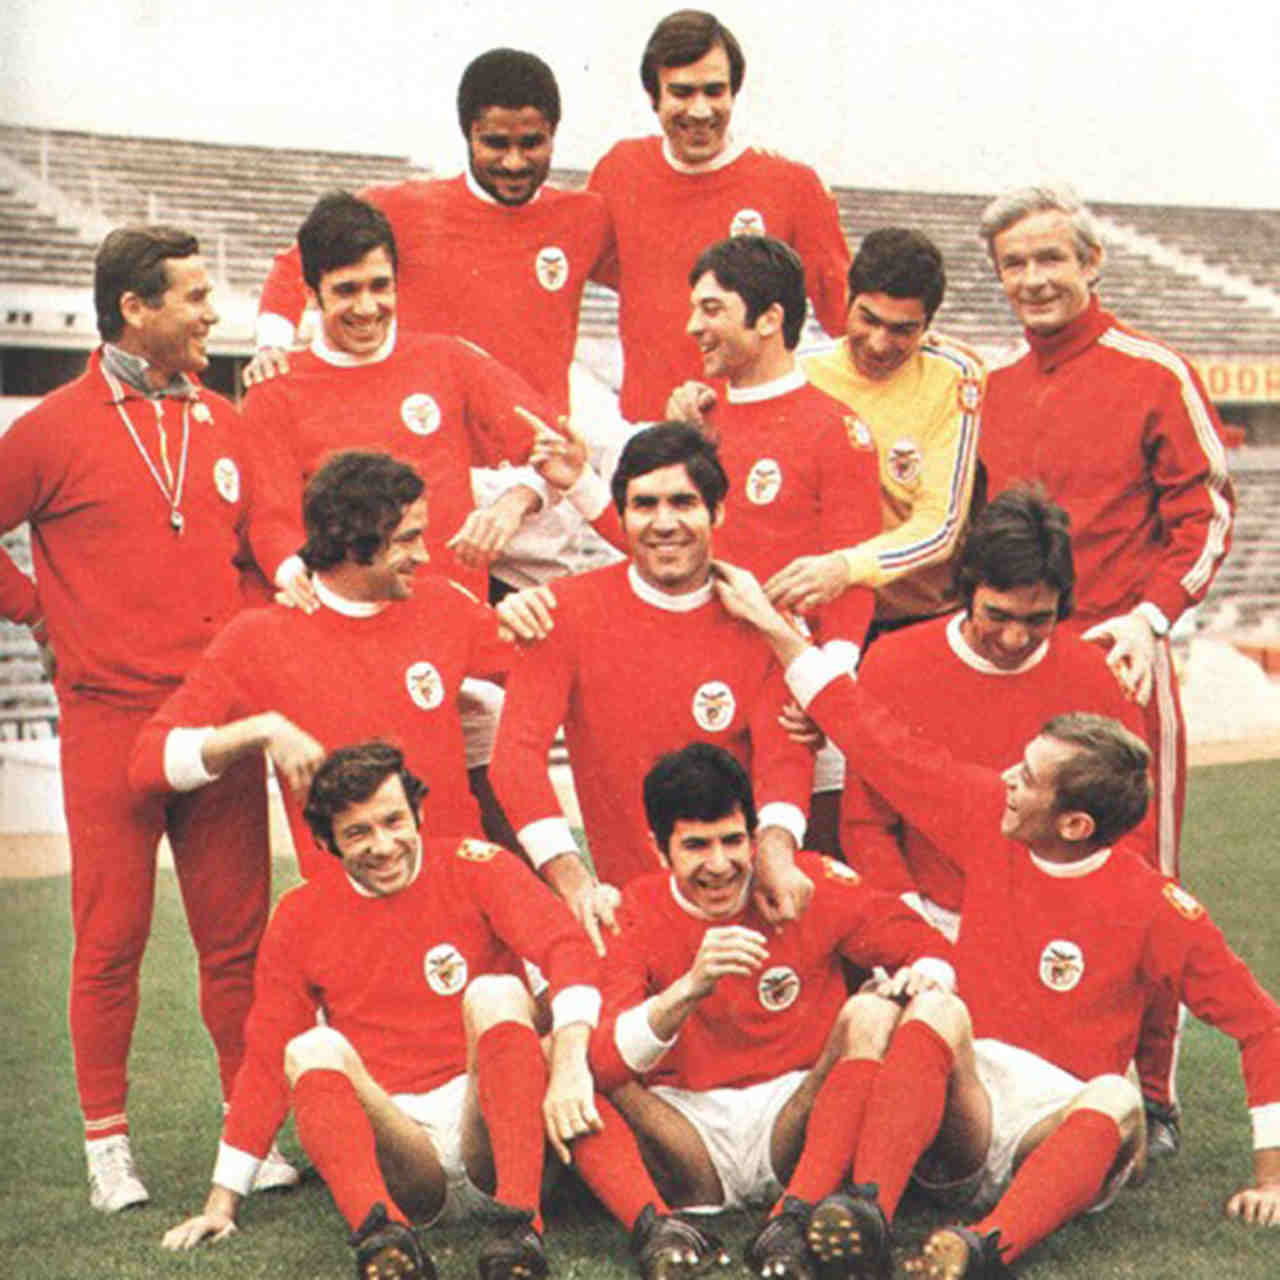 Benfica - Na temporada 1972/73, liderado por Eusébio, o time português levantou a taça sem nenhuma derrota em sua campanha (28 vitórias e 2 empates).